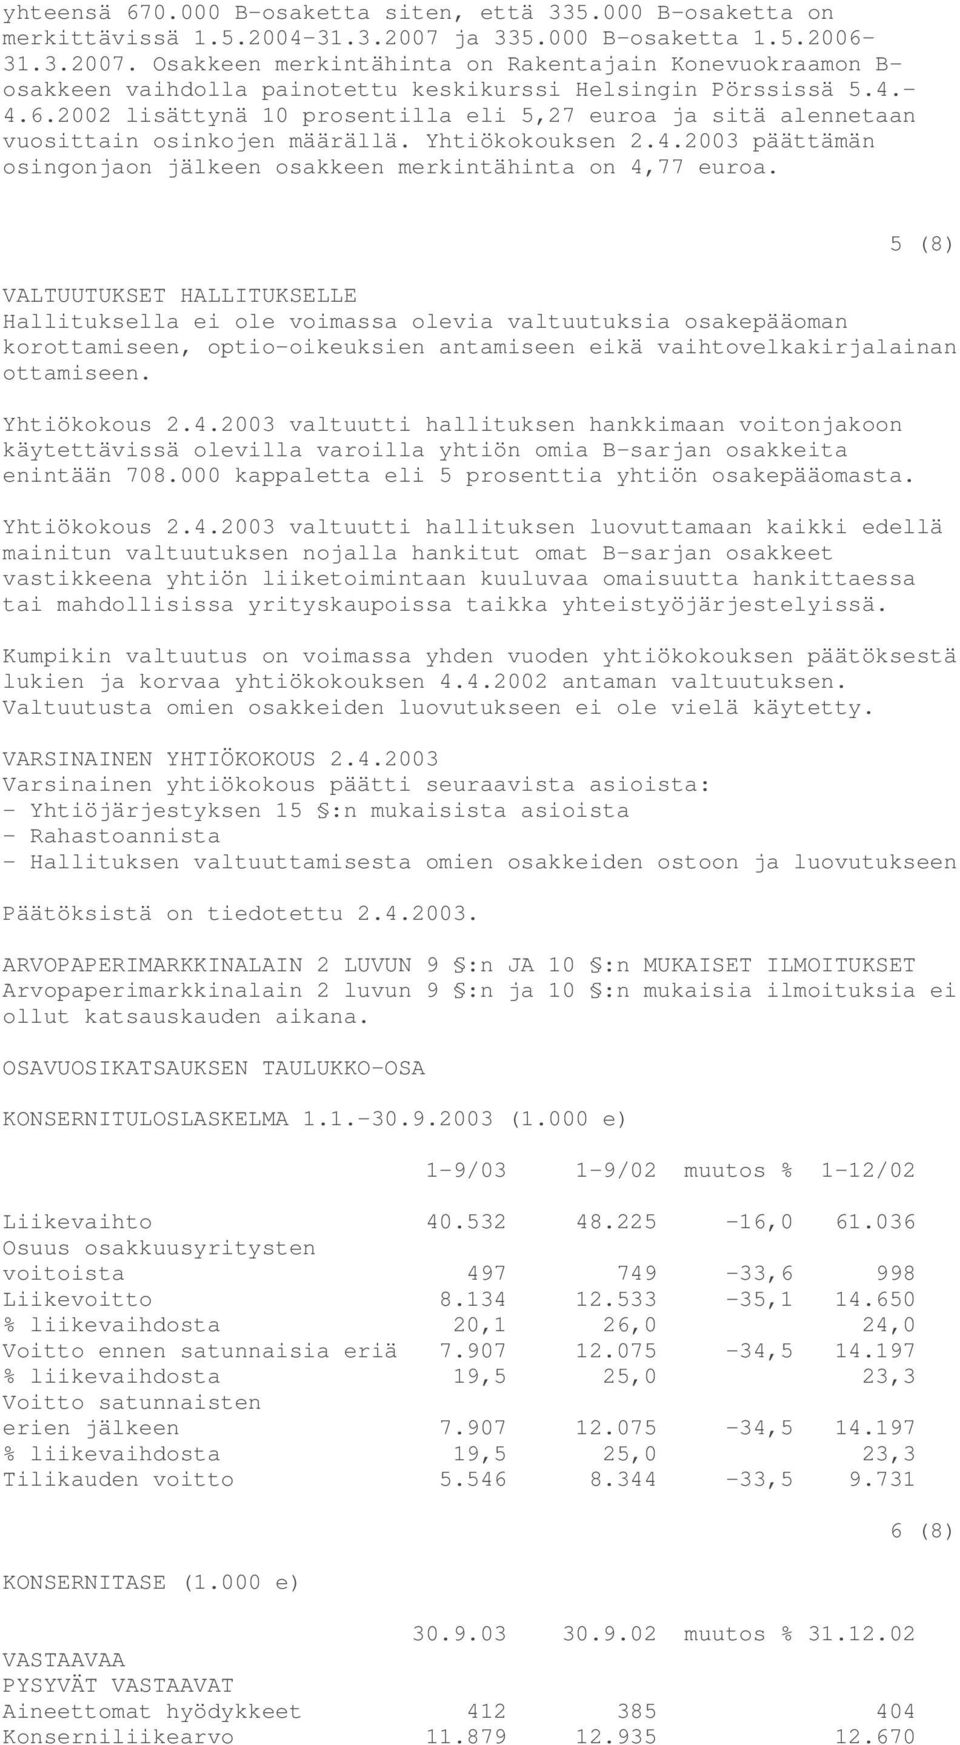 Yhtiökokouksen 2.4.2003 päättämän osingonjaon jälkeen osakkeen merkintähinta on 4,77 euroa.